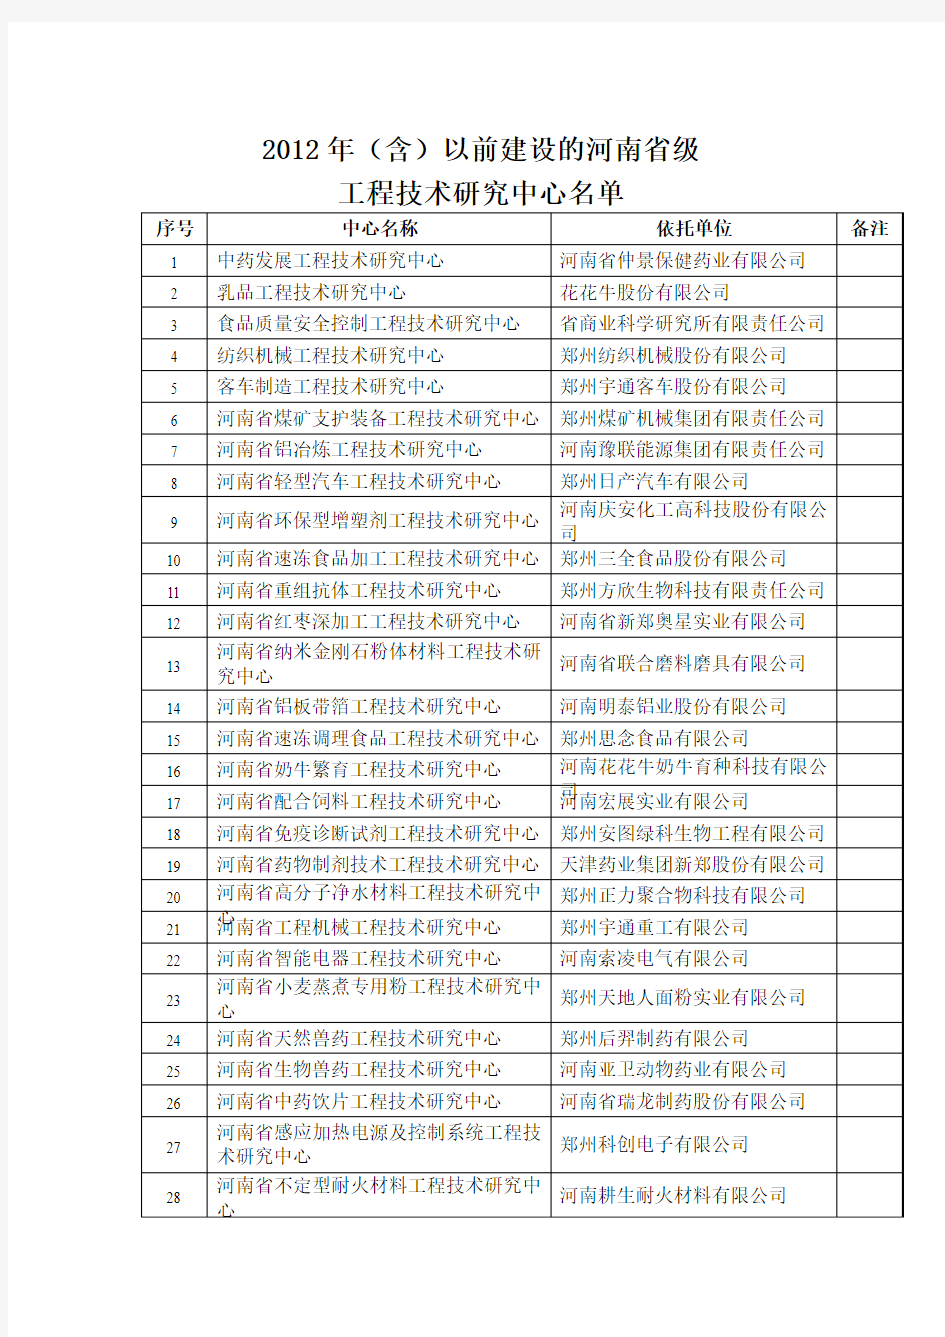 郑州市省级工程技术研究中心名单